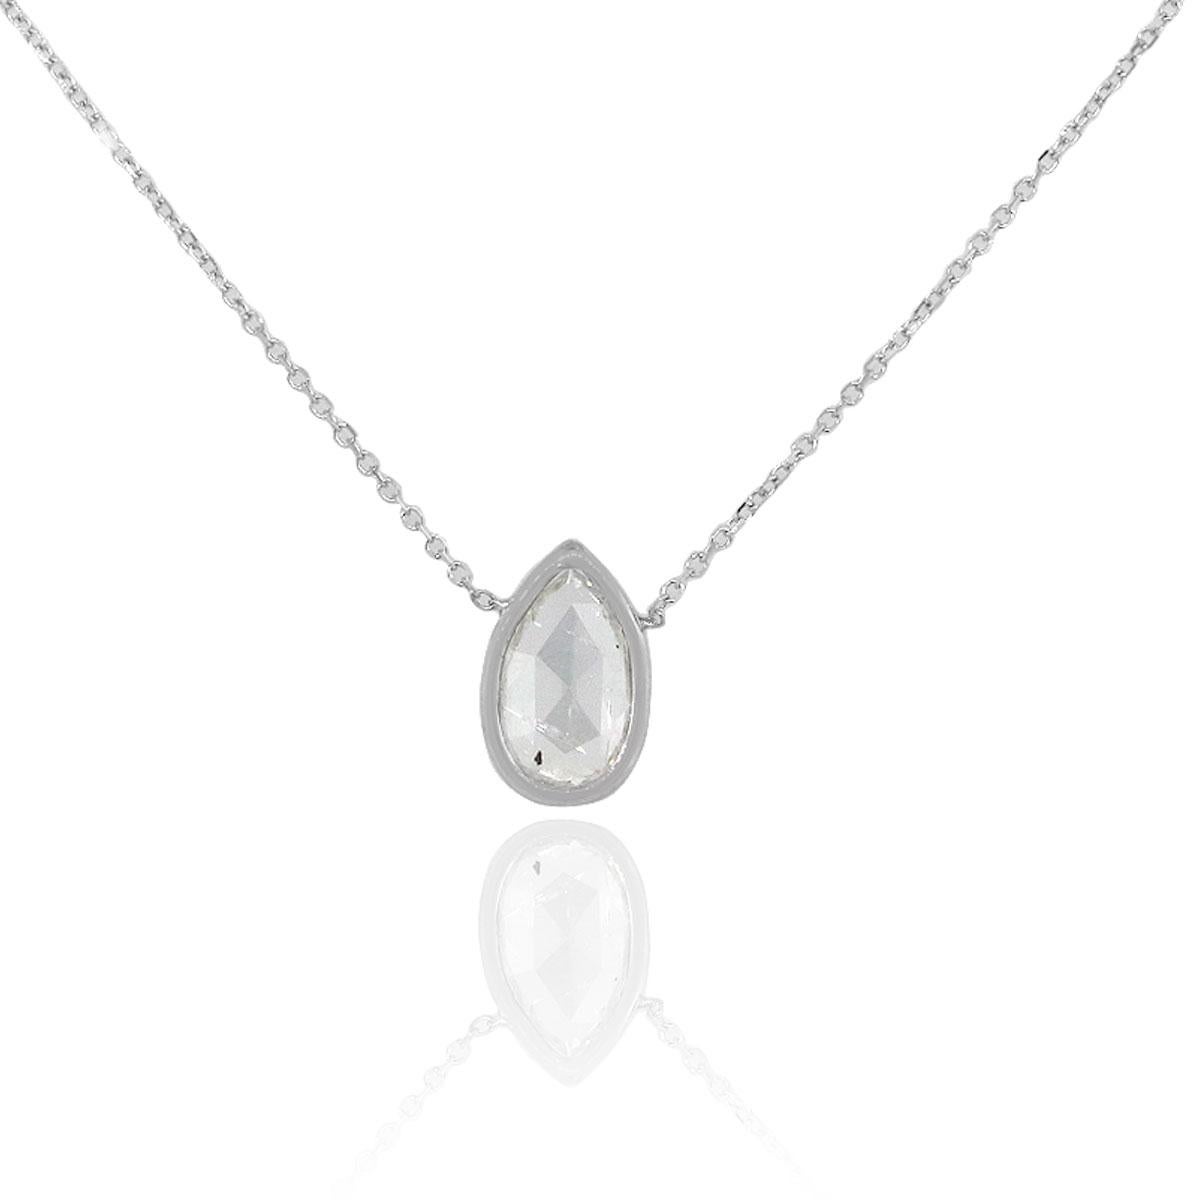 MATERIAL: 14k Weißgold
Diamant-Details: Ca. 1,24ctw Lünette gesetzt Birne Form Diamant.
Abmessungen: Halskette misst 16